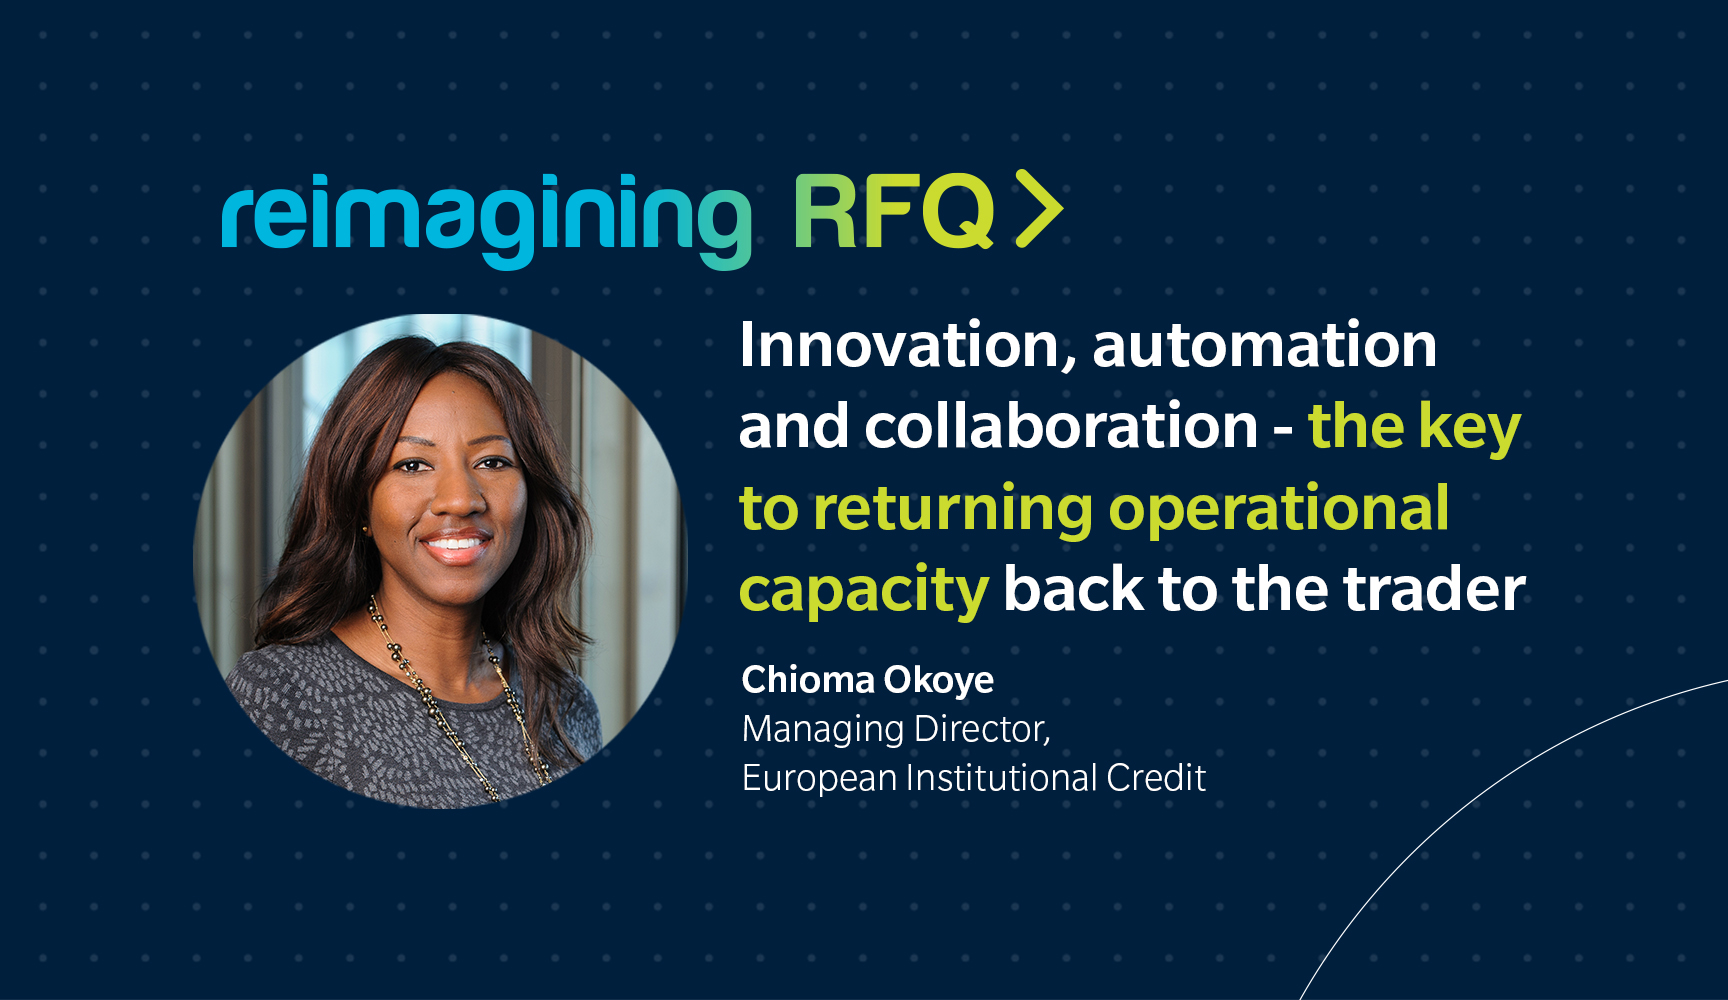 Reimagining RFQ for European Credit video